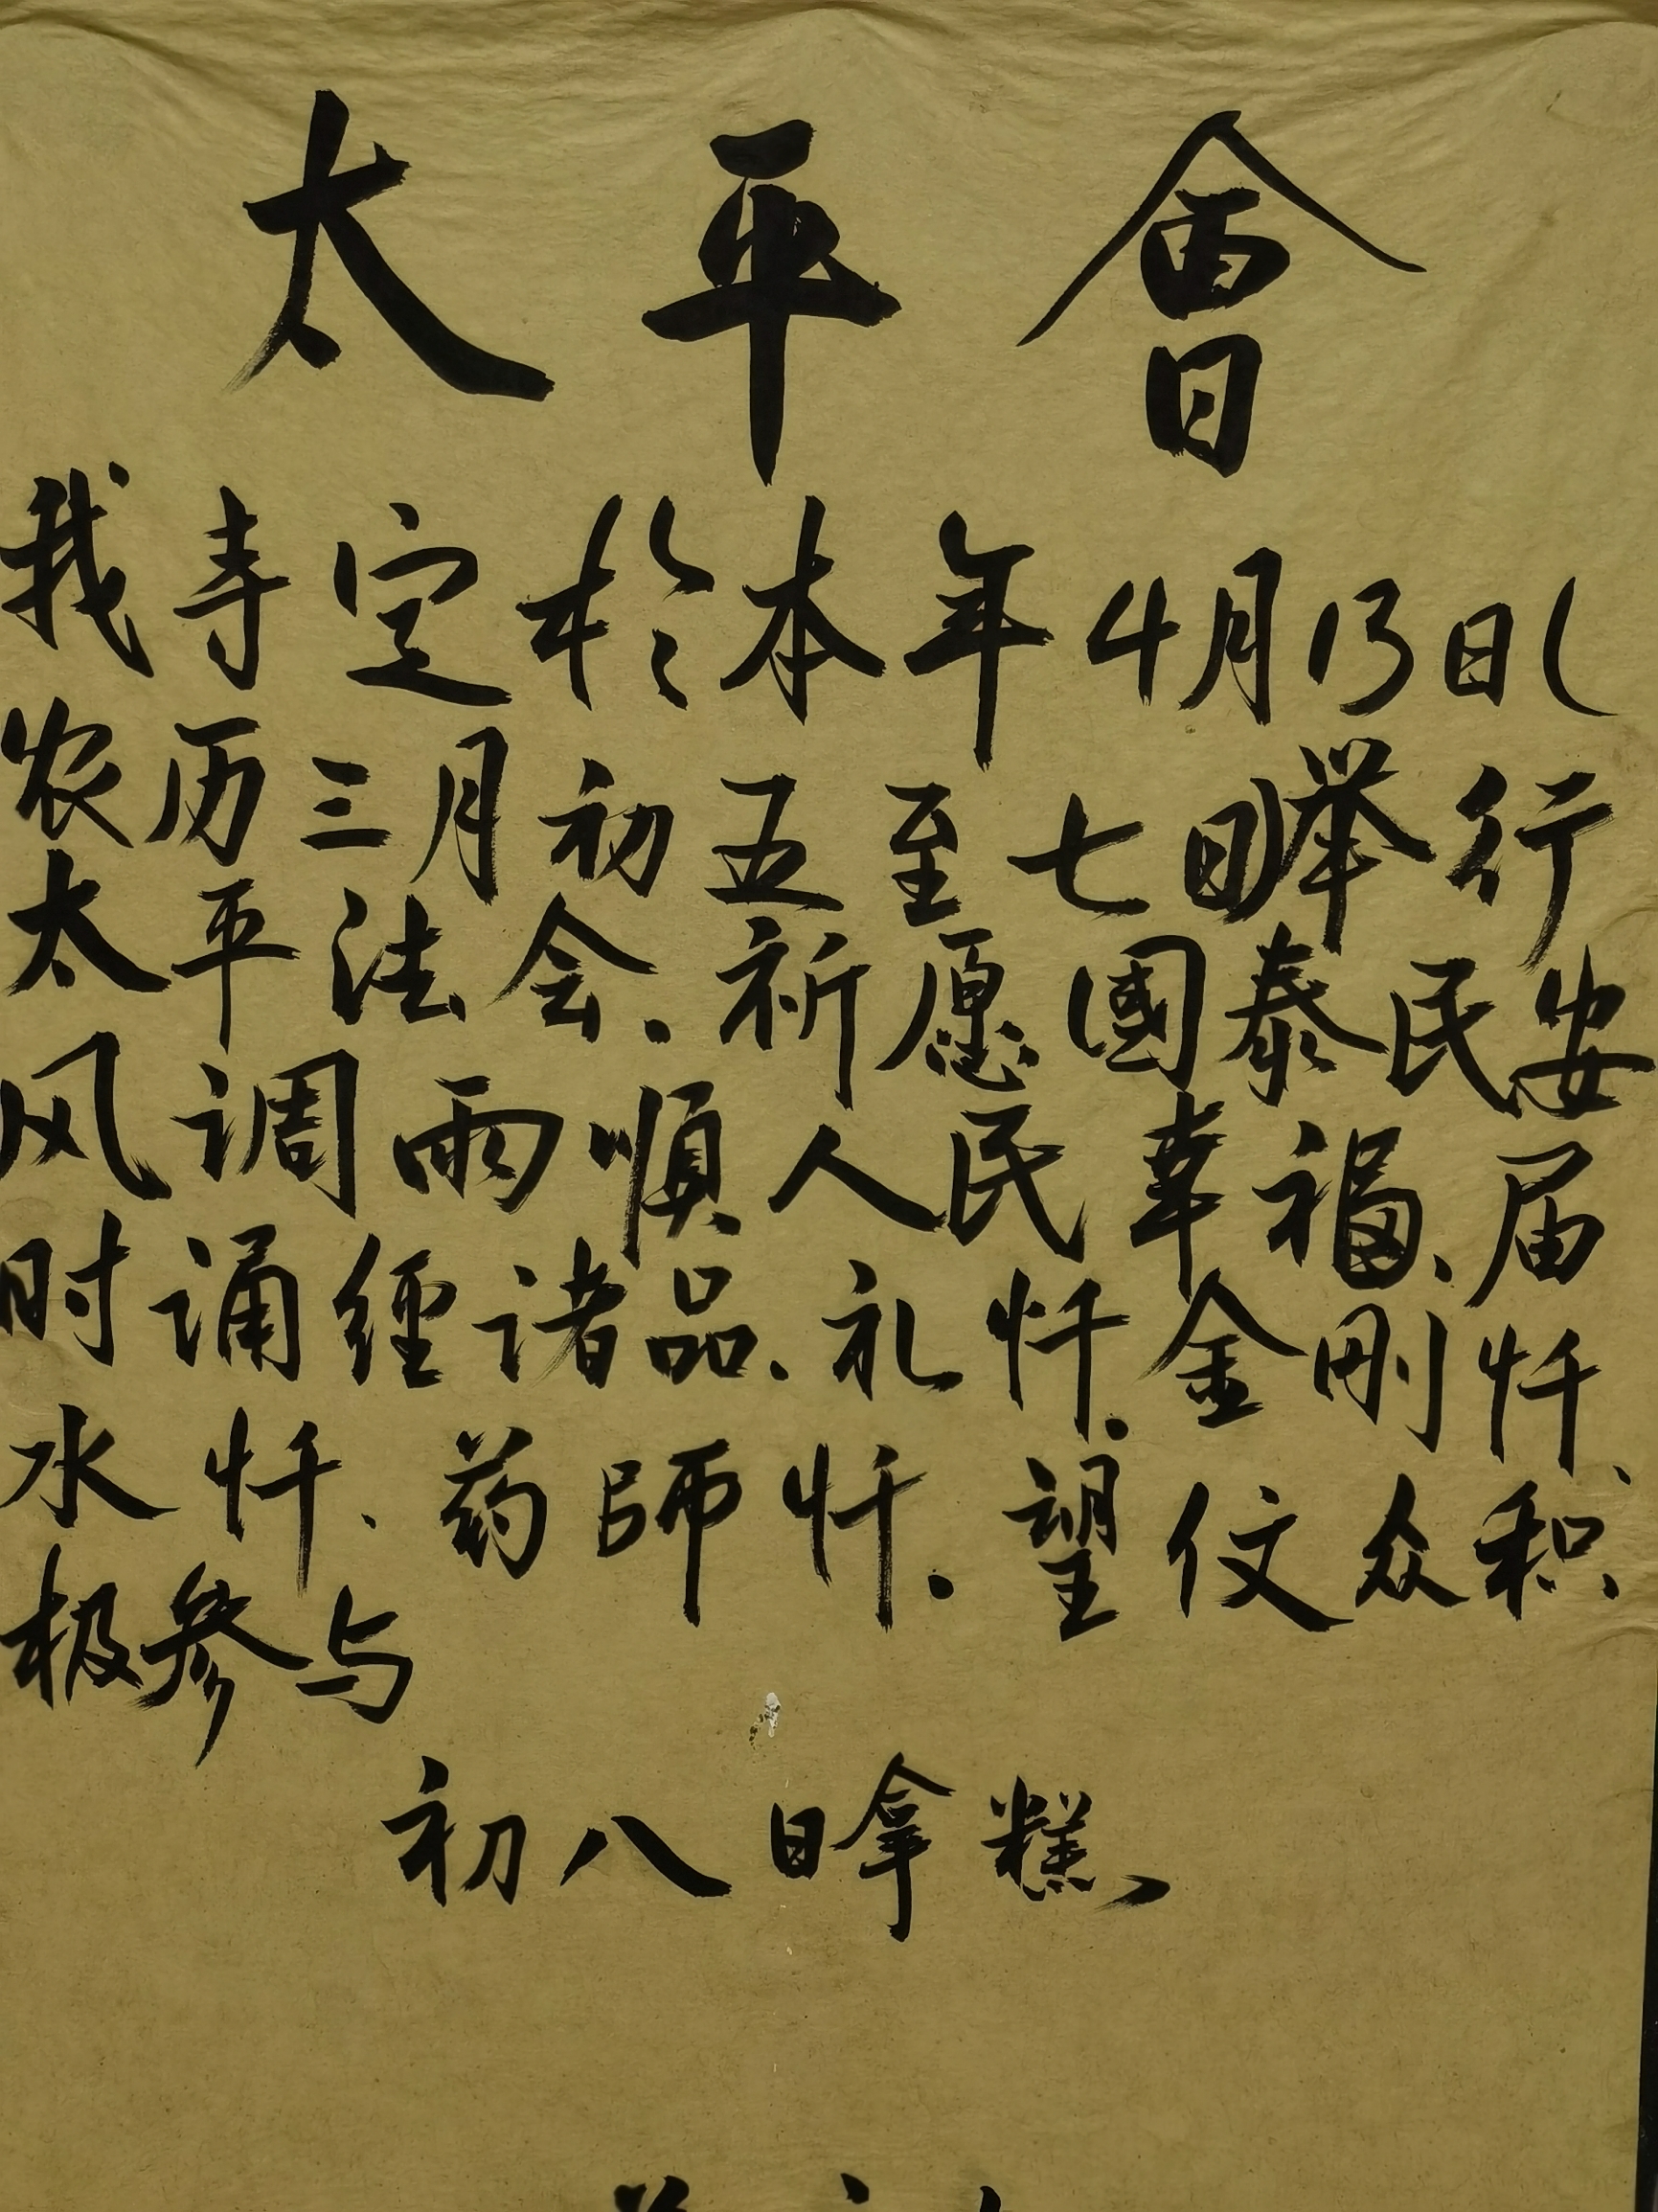 来到异国他乡，没想到在街角遇到一块中文字板，了解了一下，很有意思的太平会文化